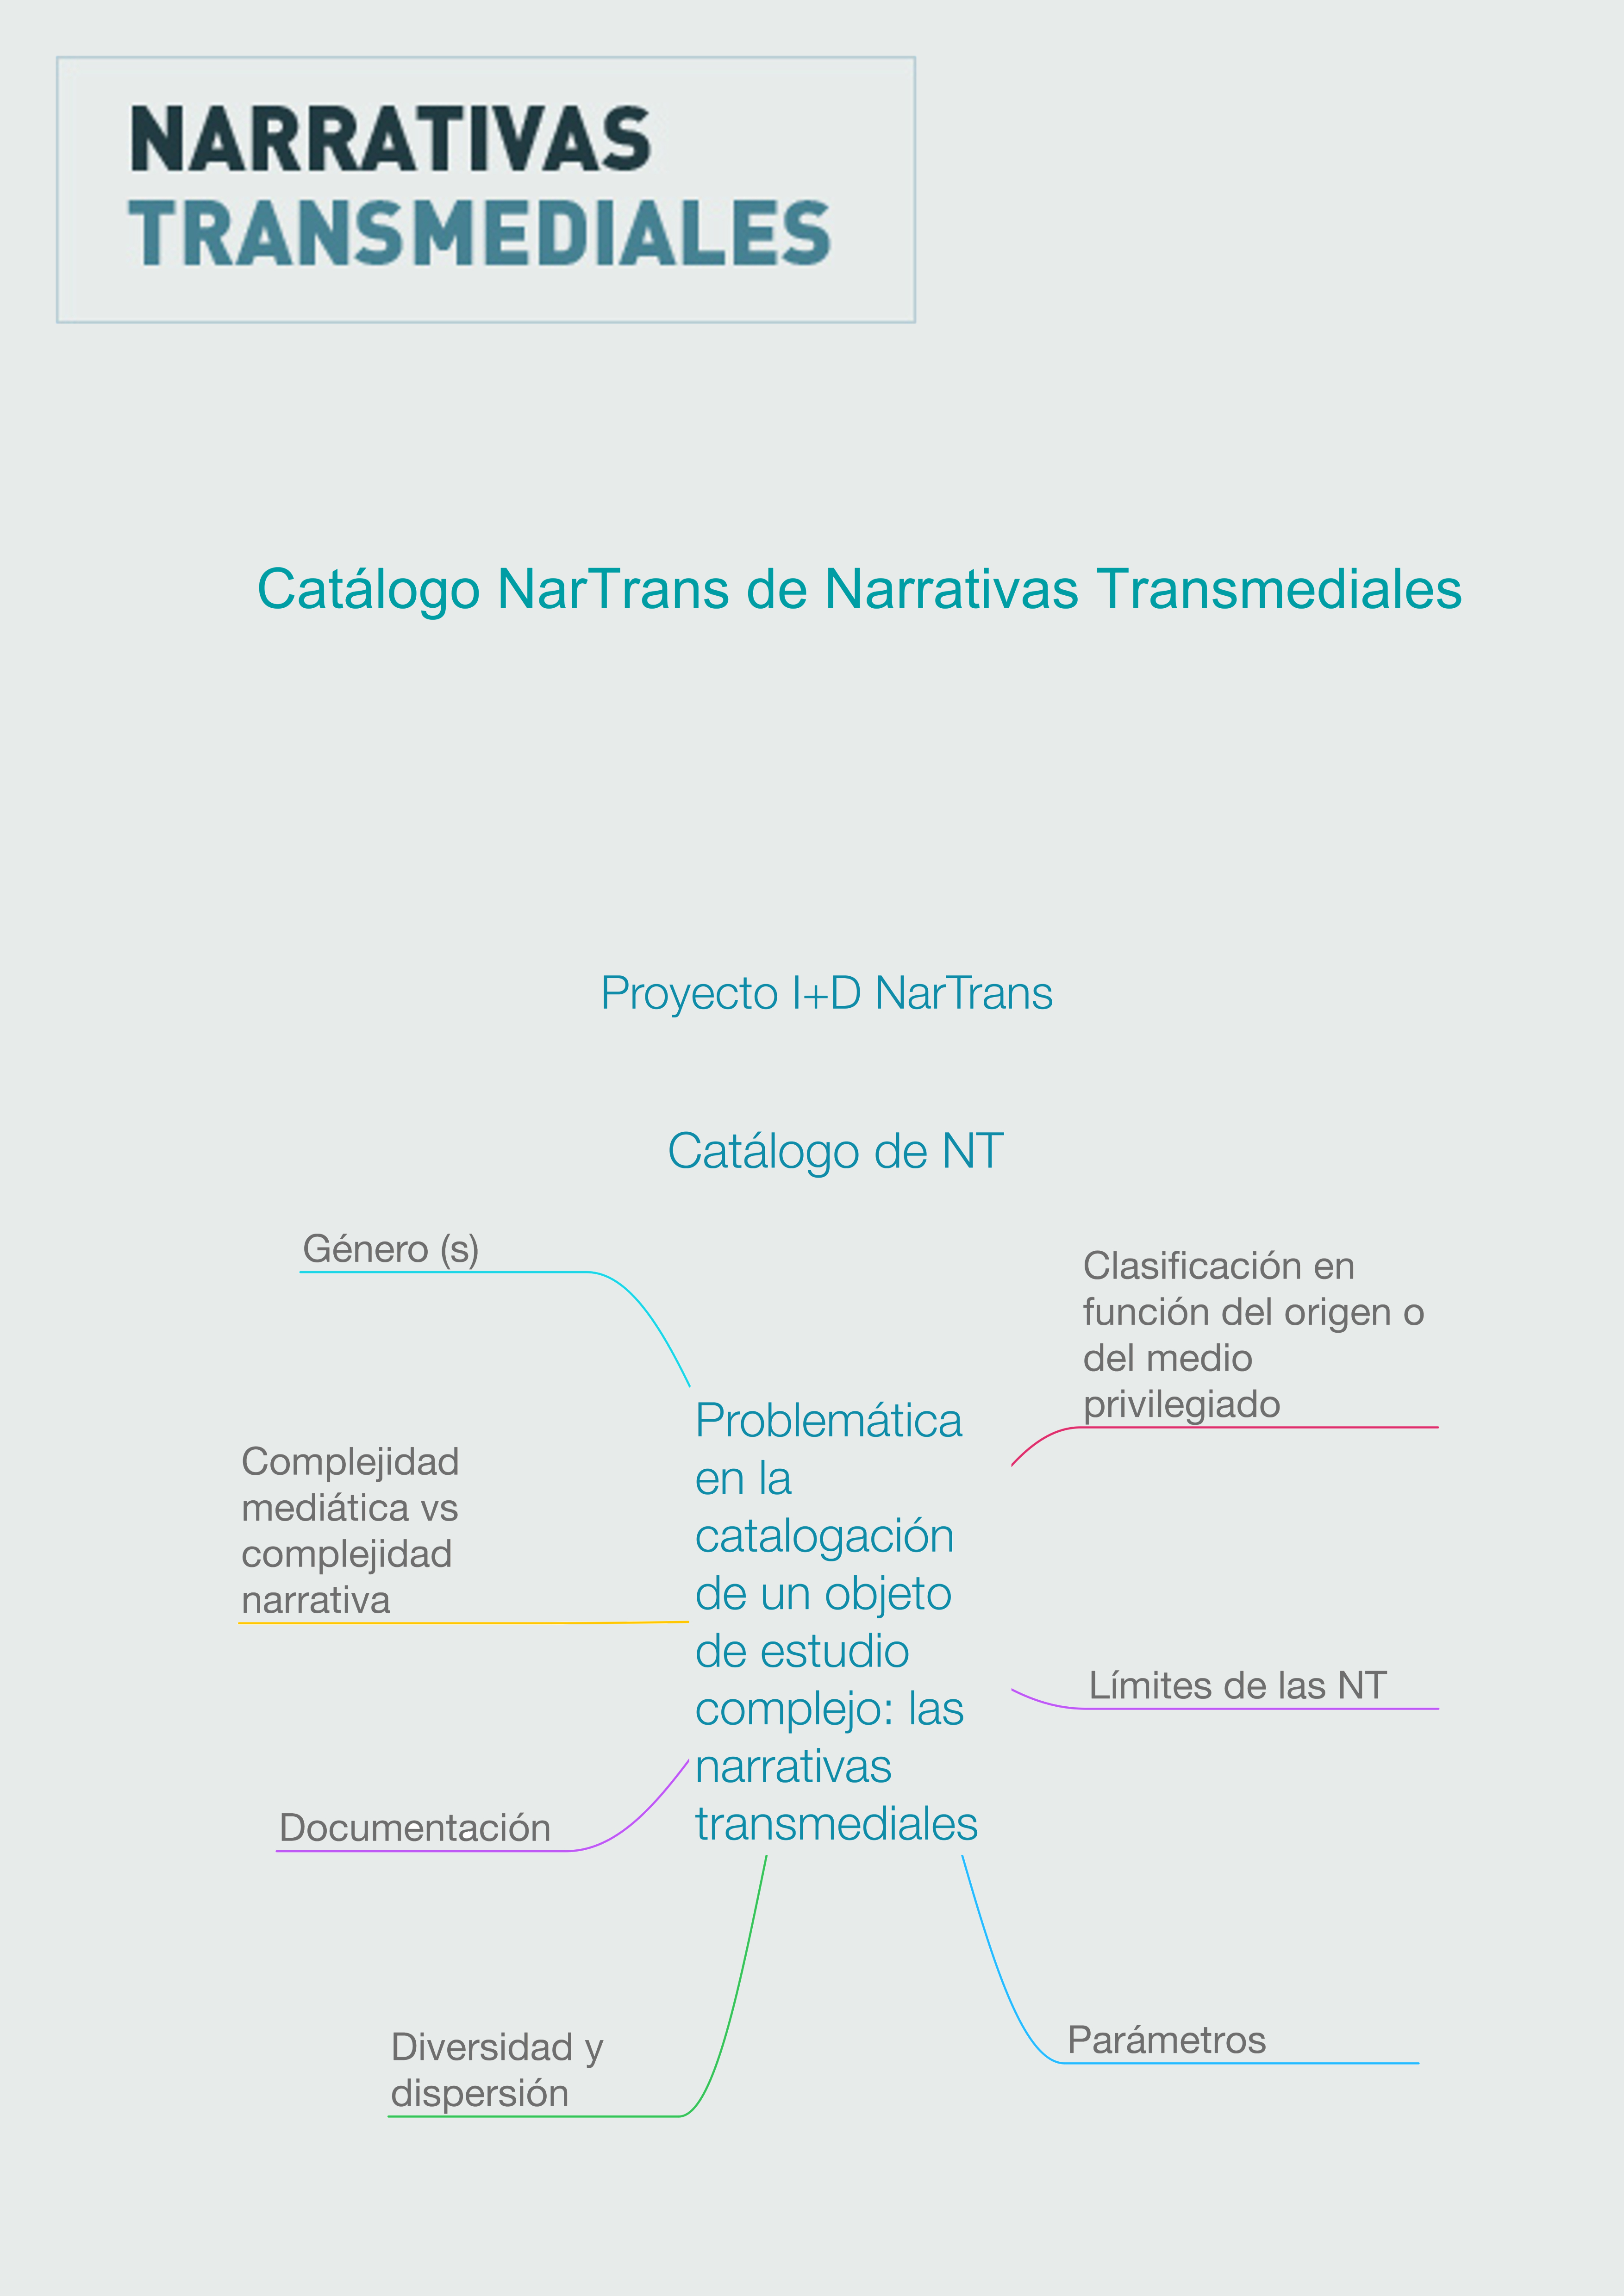 Catálogo NarTrans de Narrativas Transmediales